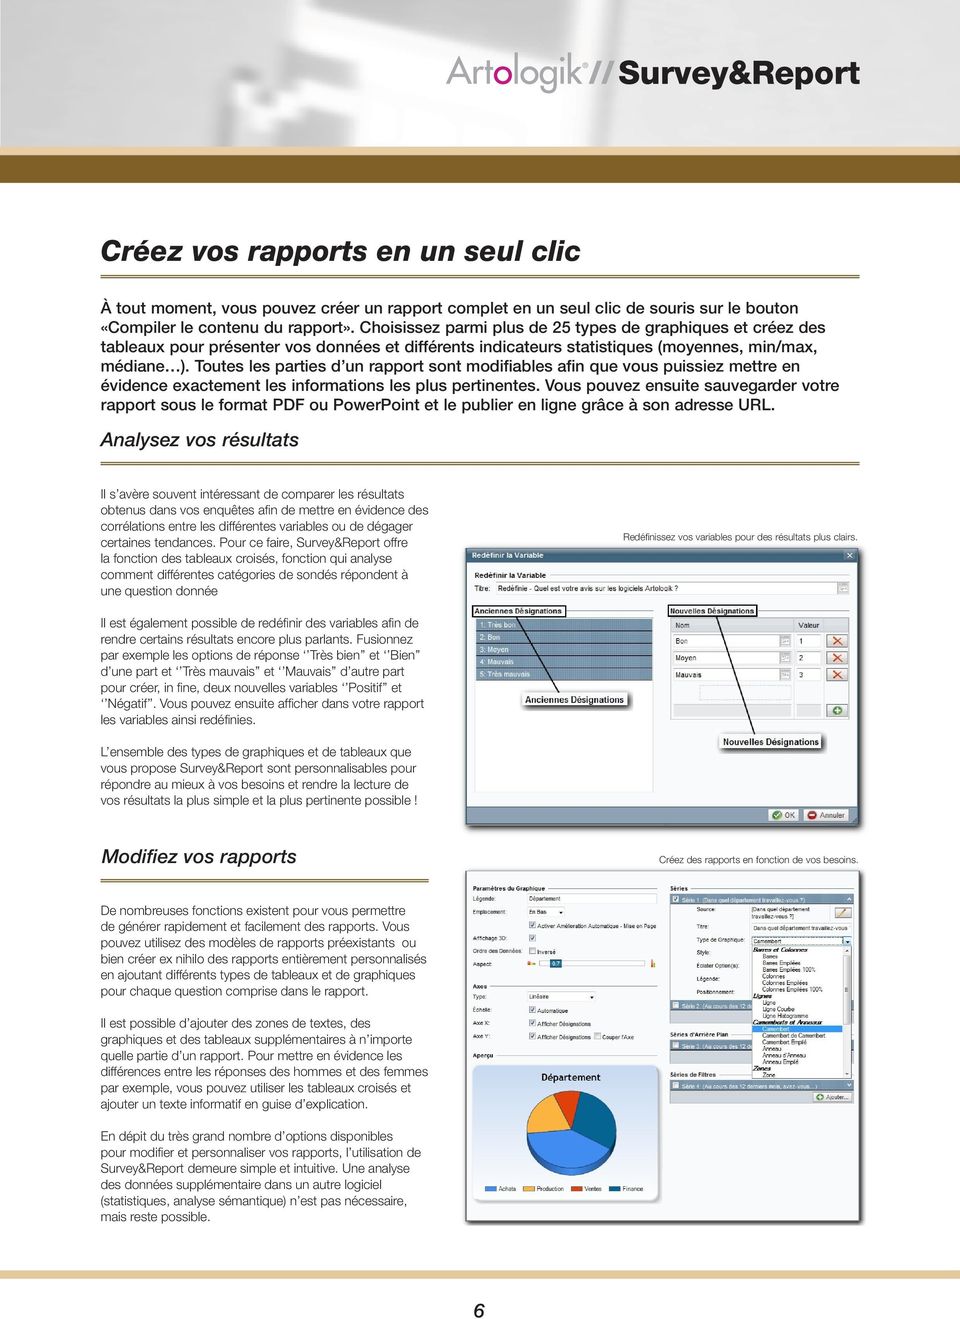 Toutes les parties d un rapport sont modifiables afin que vous puissiez mettre en évidence exactement les informations les plus pertinentes.